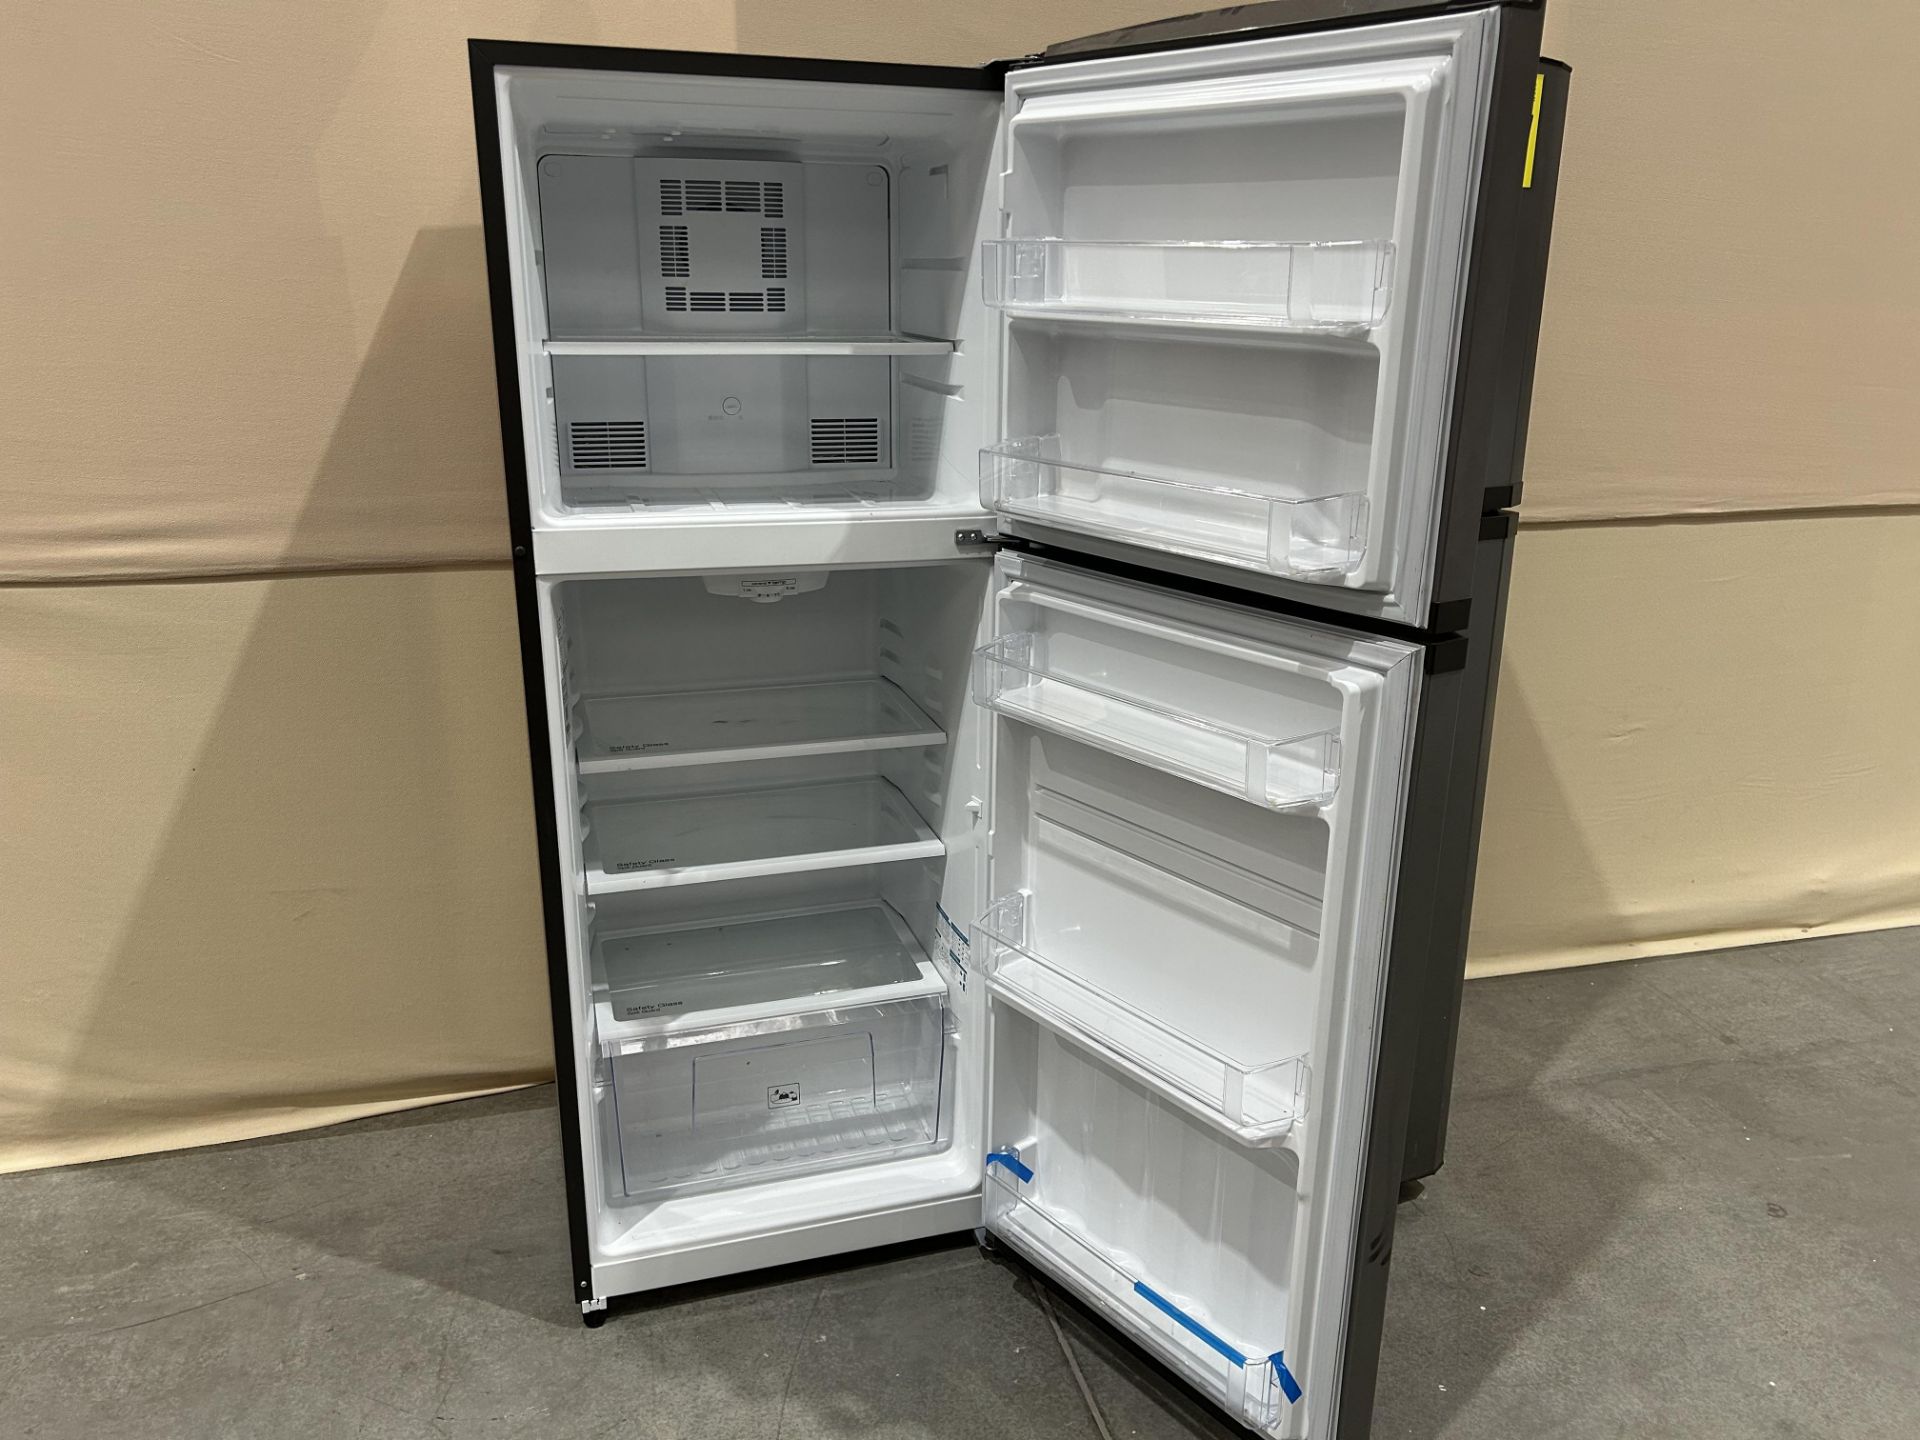 Lote de 2 refrigeradores contiene: 1 Refrigerador Marca MABE, Modelo RME360PVMRMA, Serie 822367, Co - Image 4 of 10